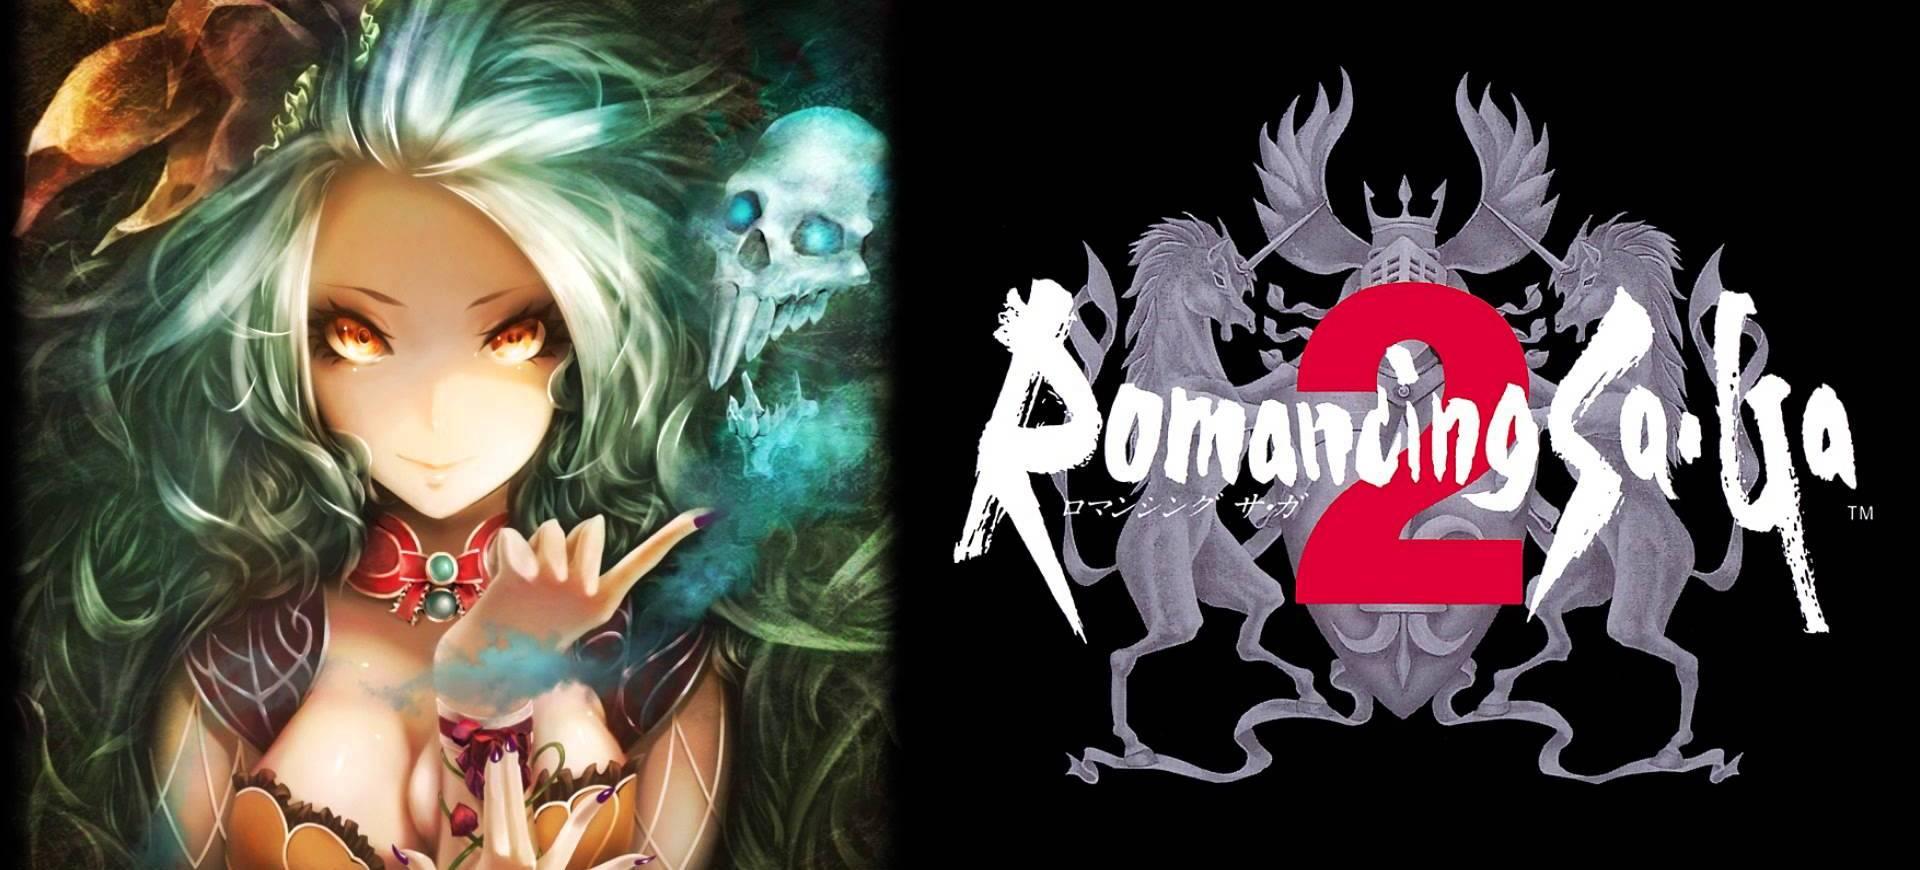 Square Enix chuẩn bị phát hành Romancing SaGa 2 ở phương Tây - Tin Game Mobile